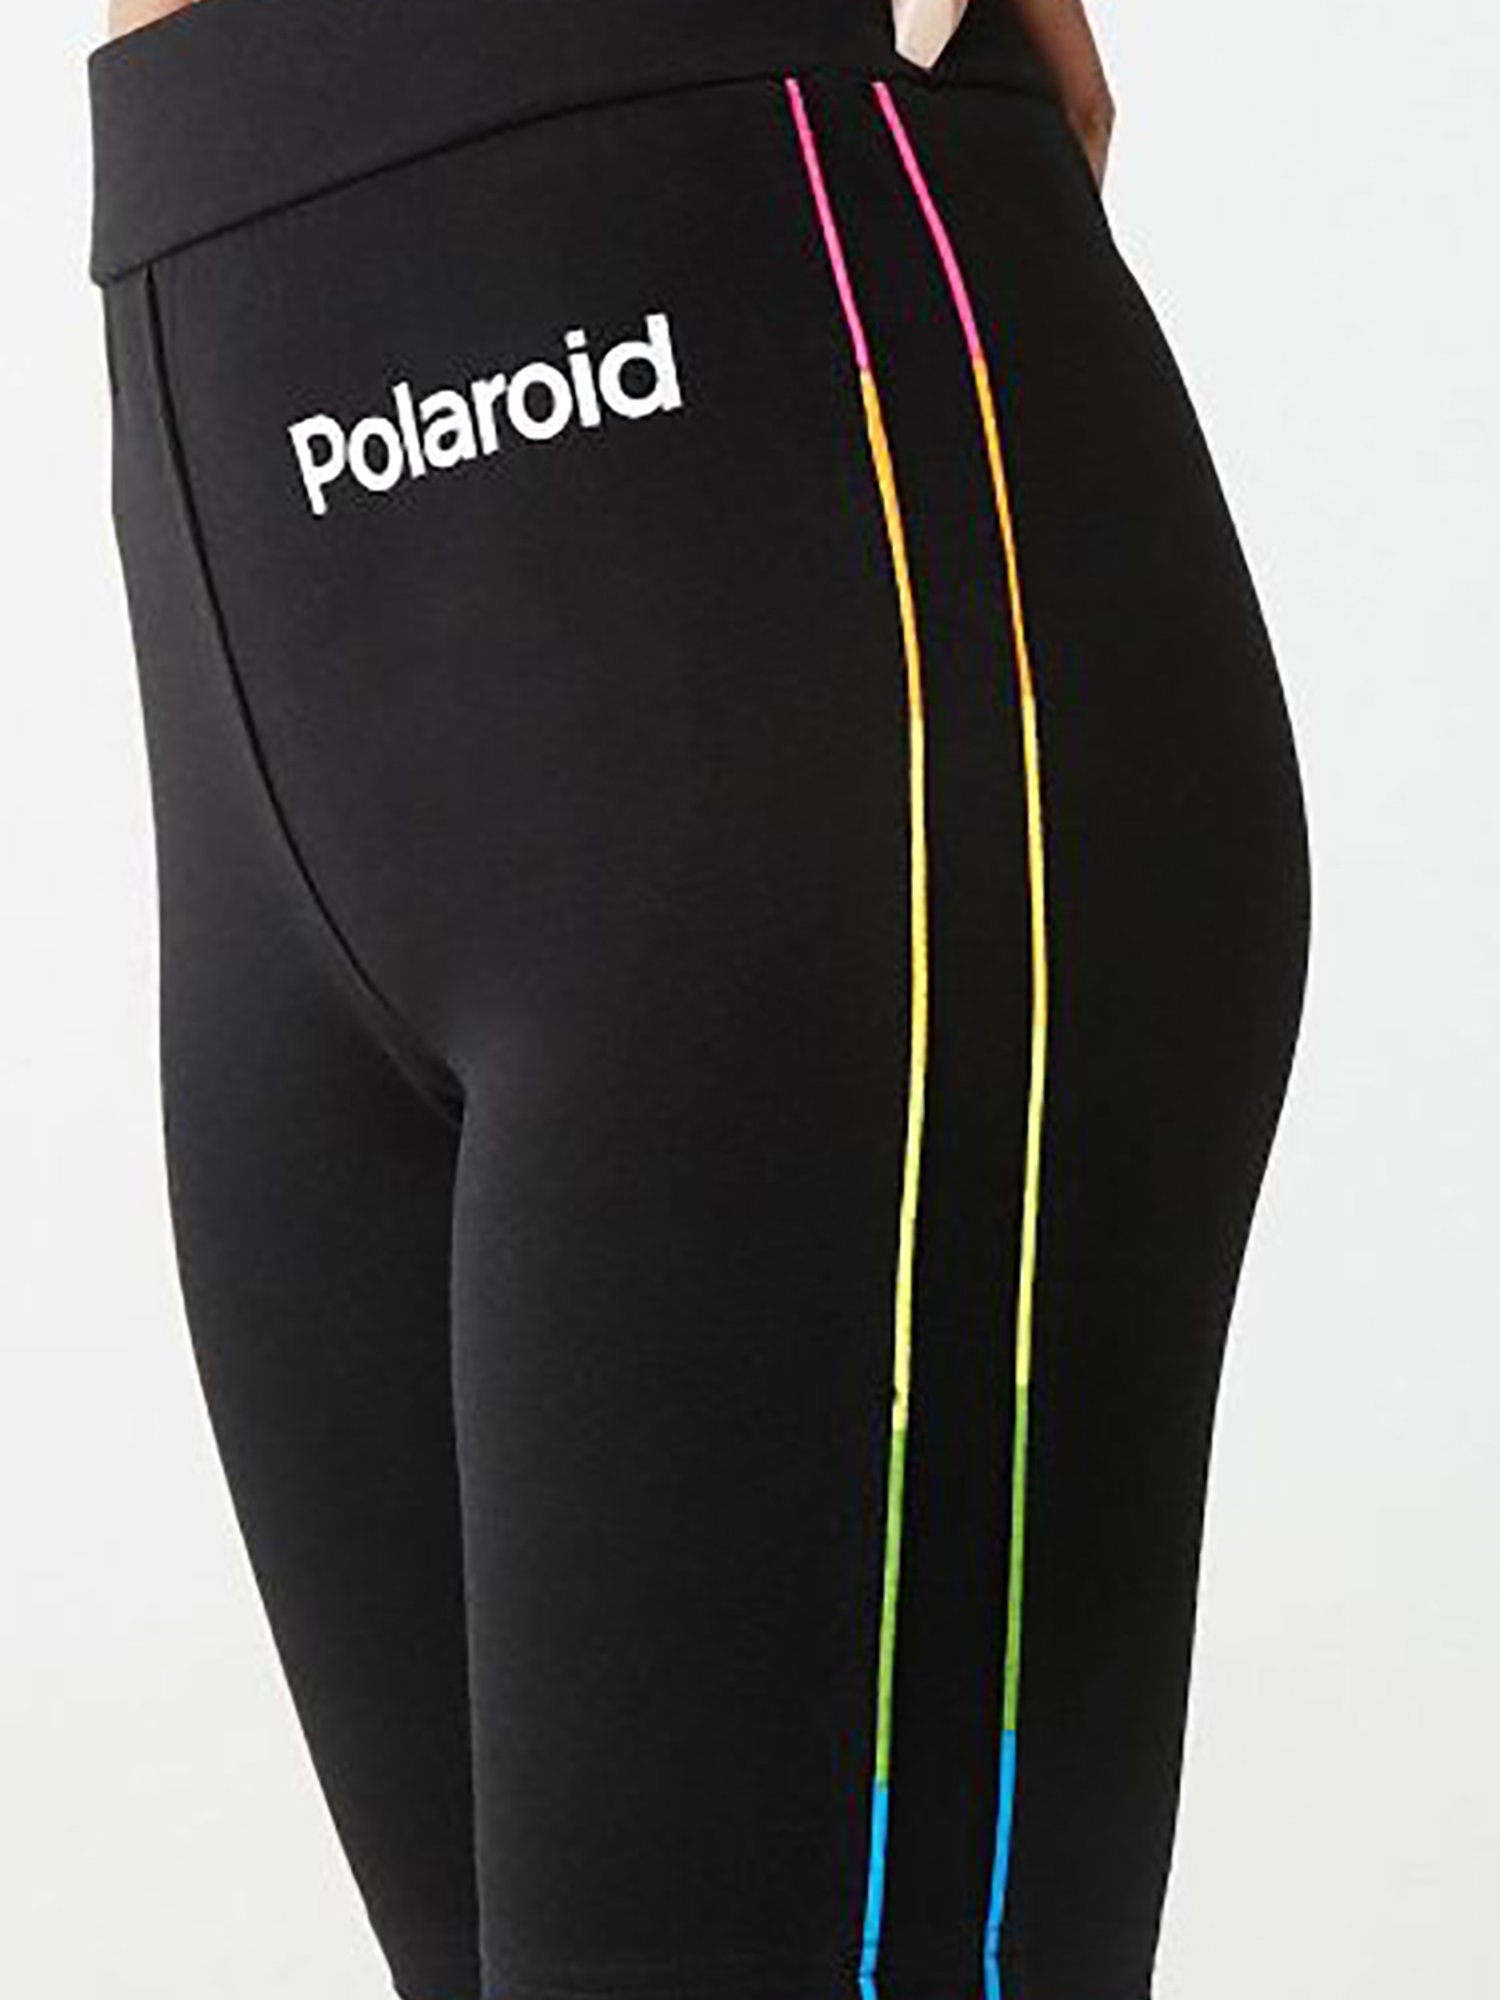 polaroid biker shorts